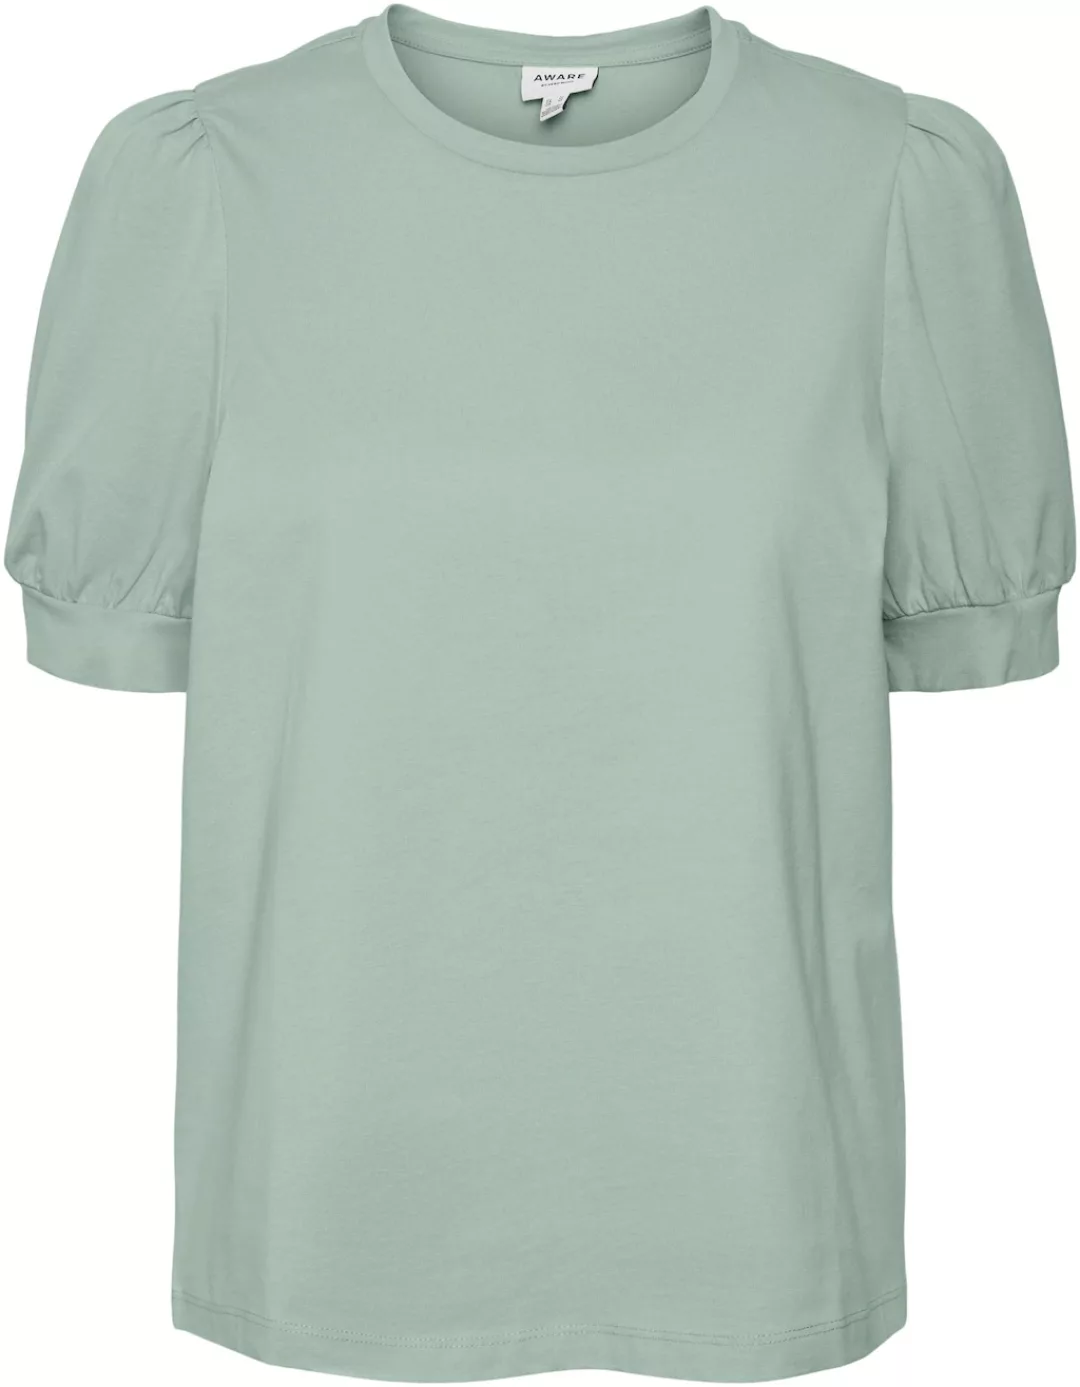 Vero Moda T-Shirt VMKERRY 2/4 O-NECK TOP VMA JRS NOOS mit Rundhalsausschnit günstig online kaufen